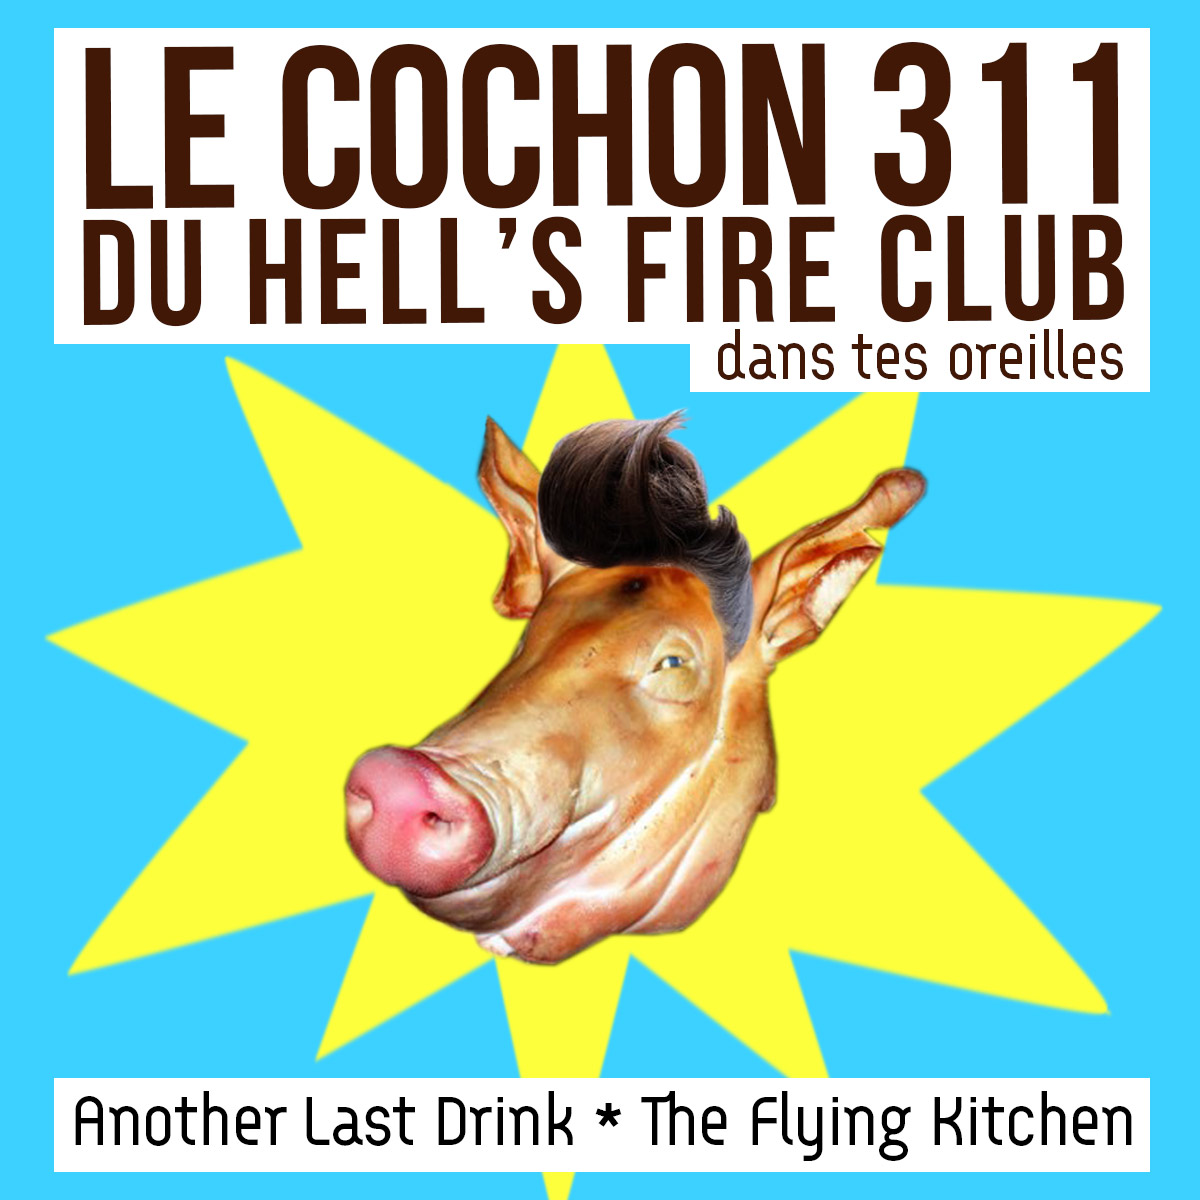 Le Cochon 311 du Hell's Fire Club dans tes oreilles